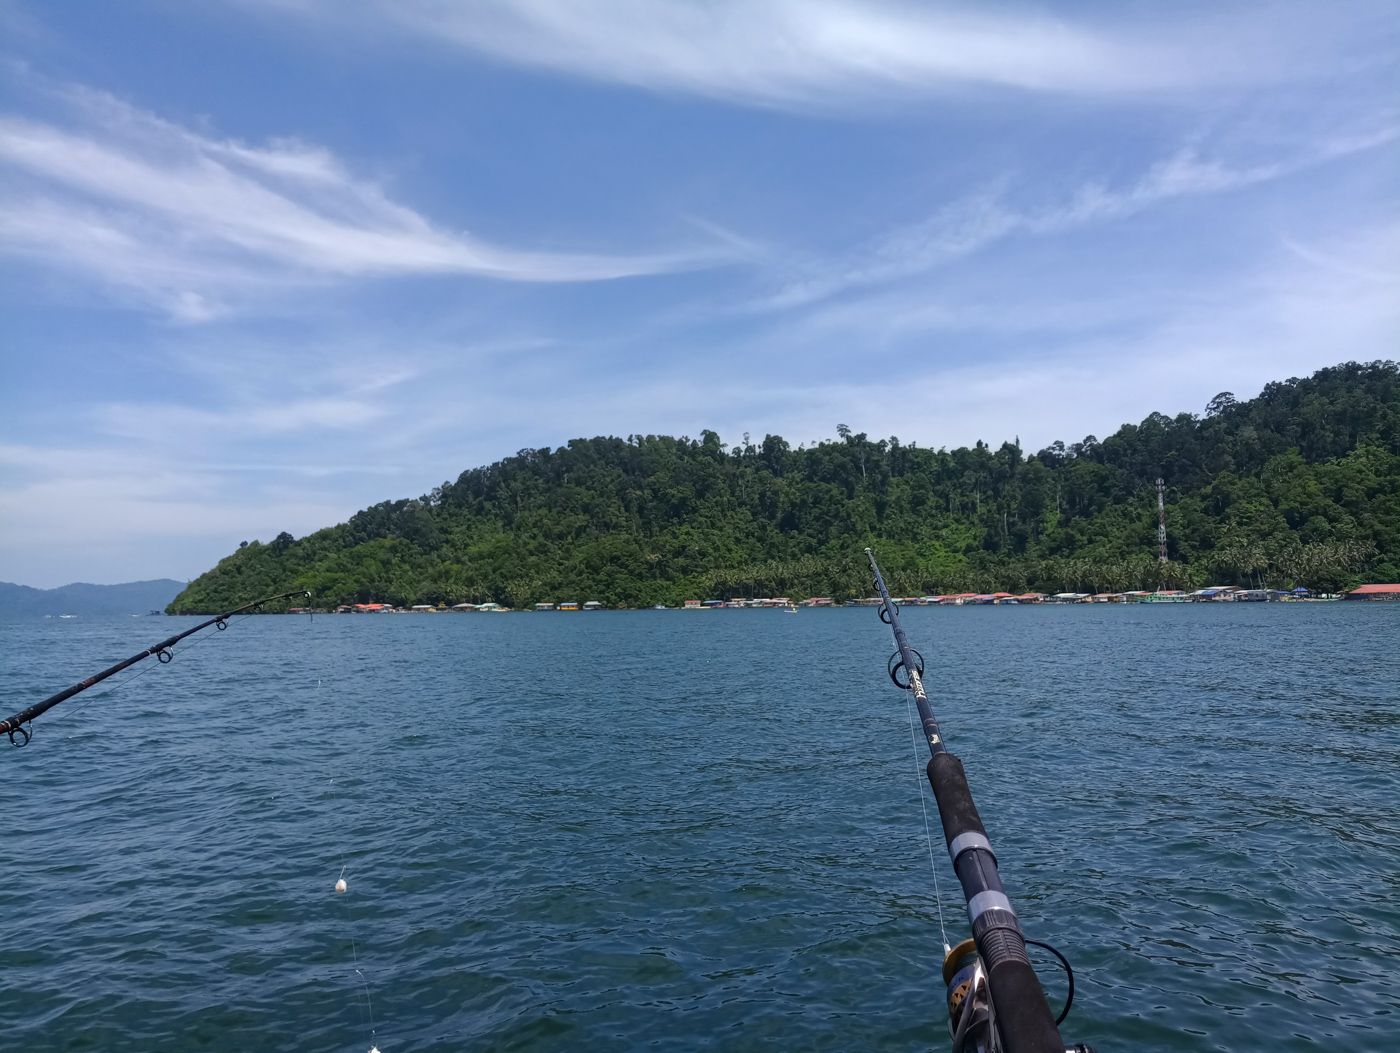 马来西亚亚庇沙比岛附近海钓。到达第一个钓点后，船员介绍海钓的操作方法，从挂鱼食、铅锤到收线，我们这种